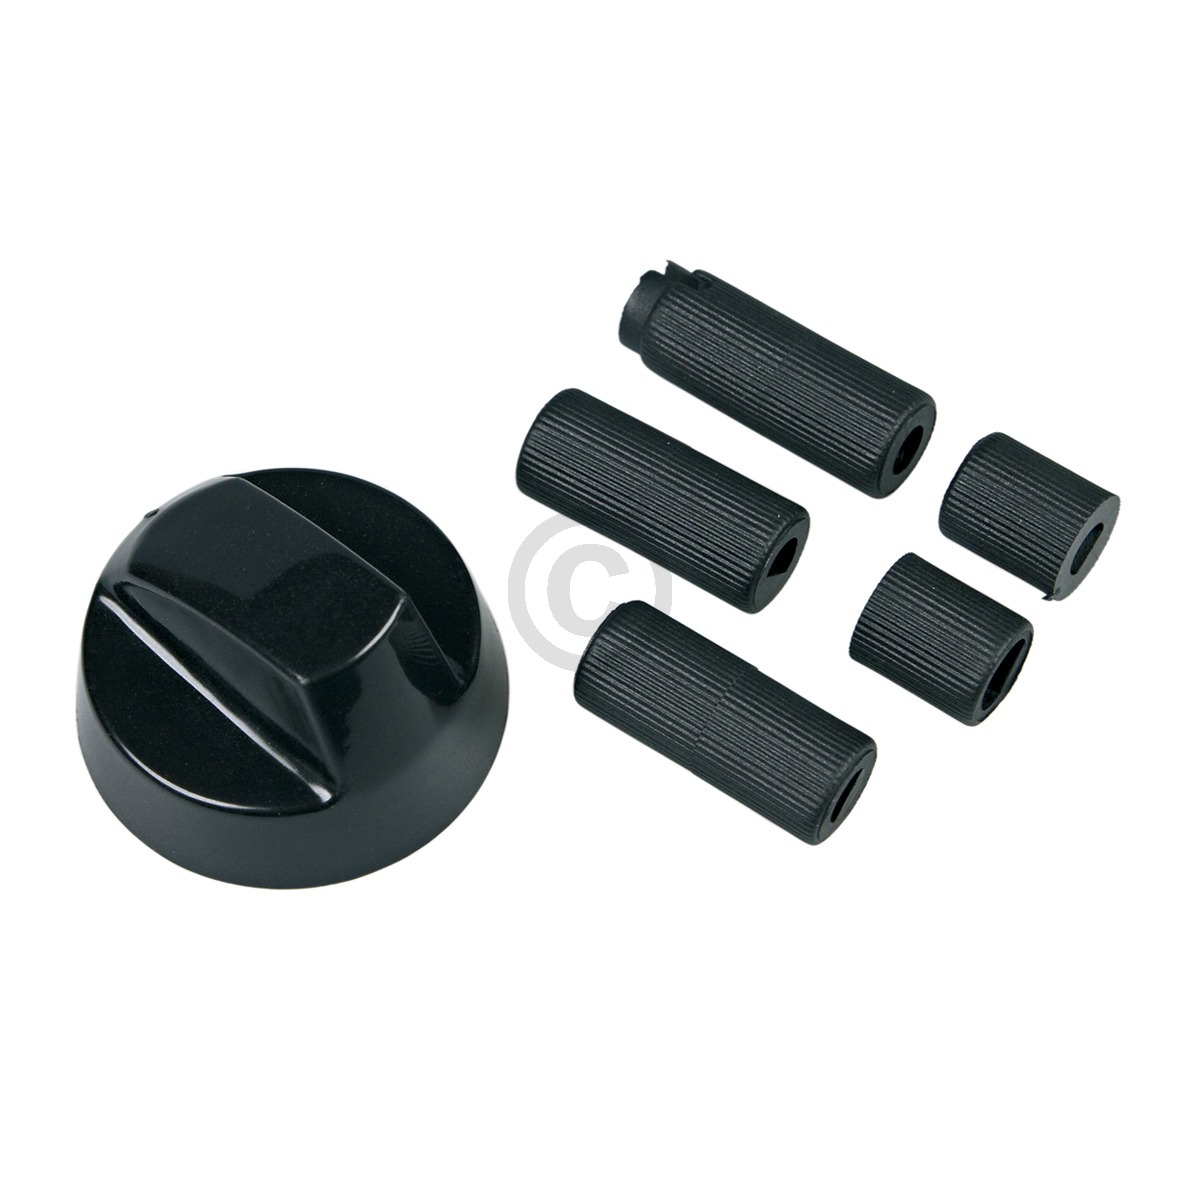 Knebel 43mmØ schwarz mit Adaptern Universal für alle Marken